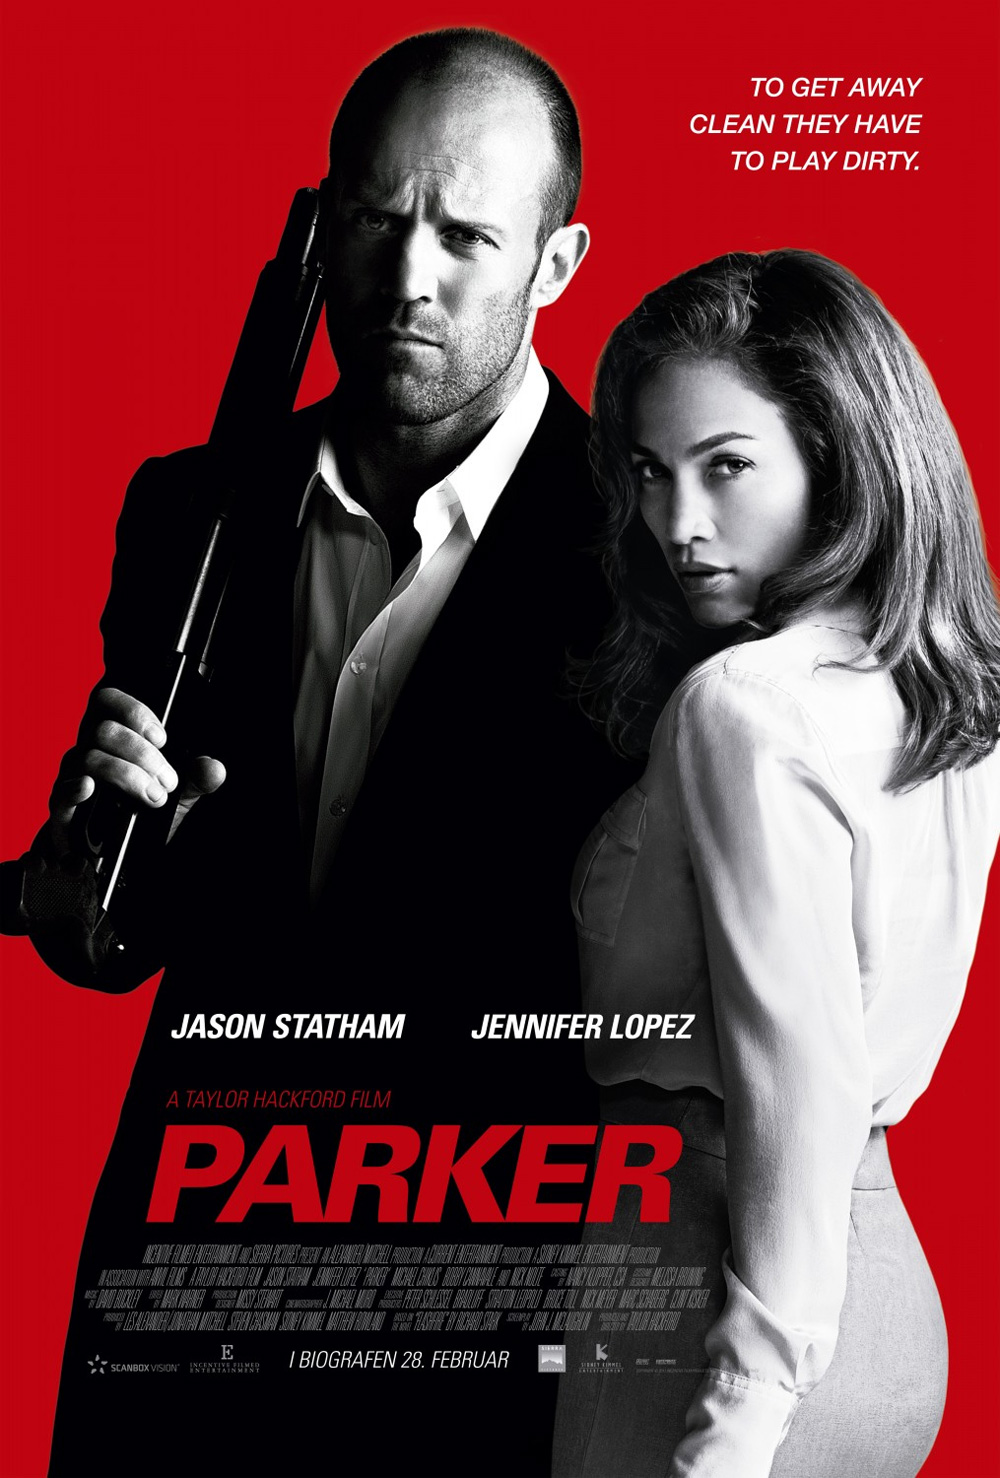 Poster Parker